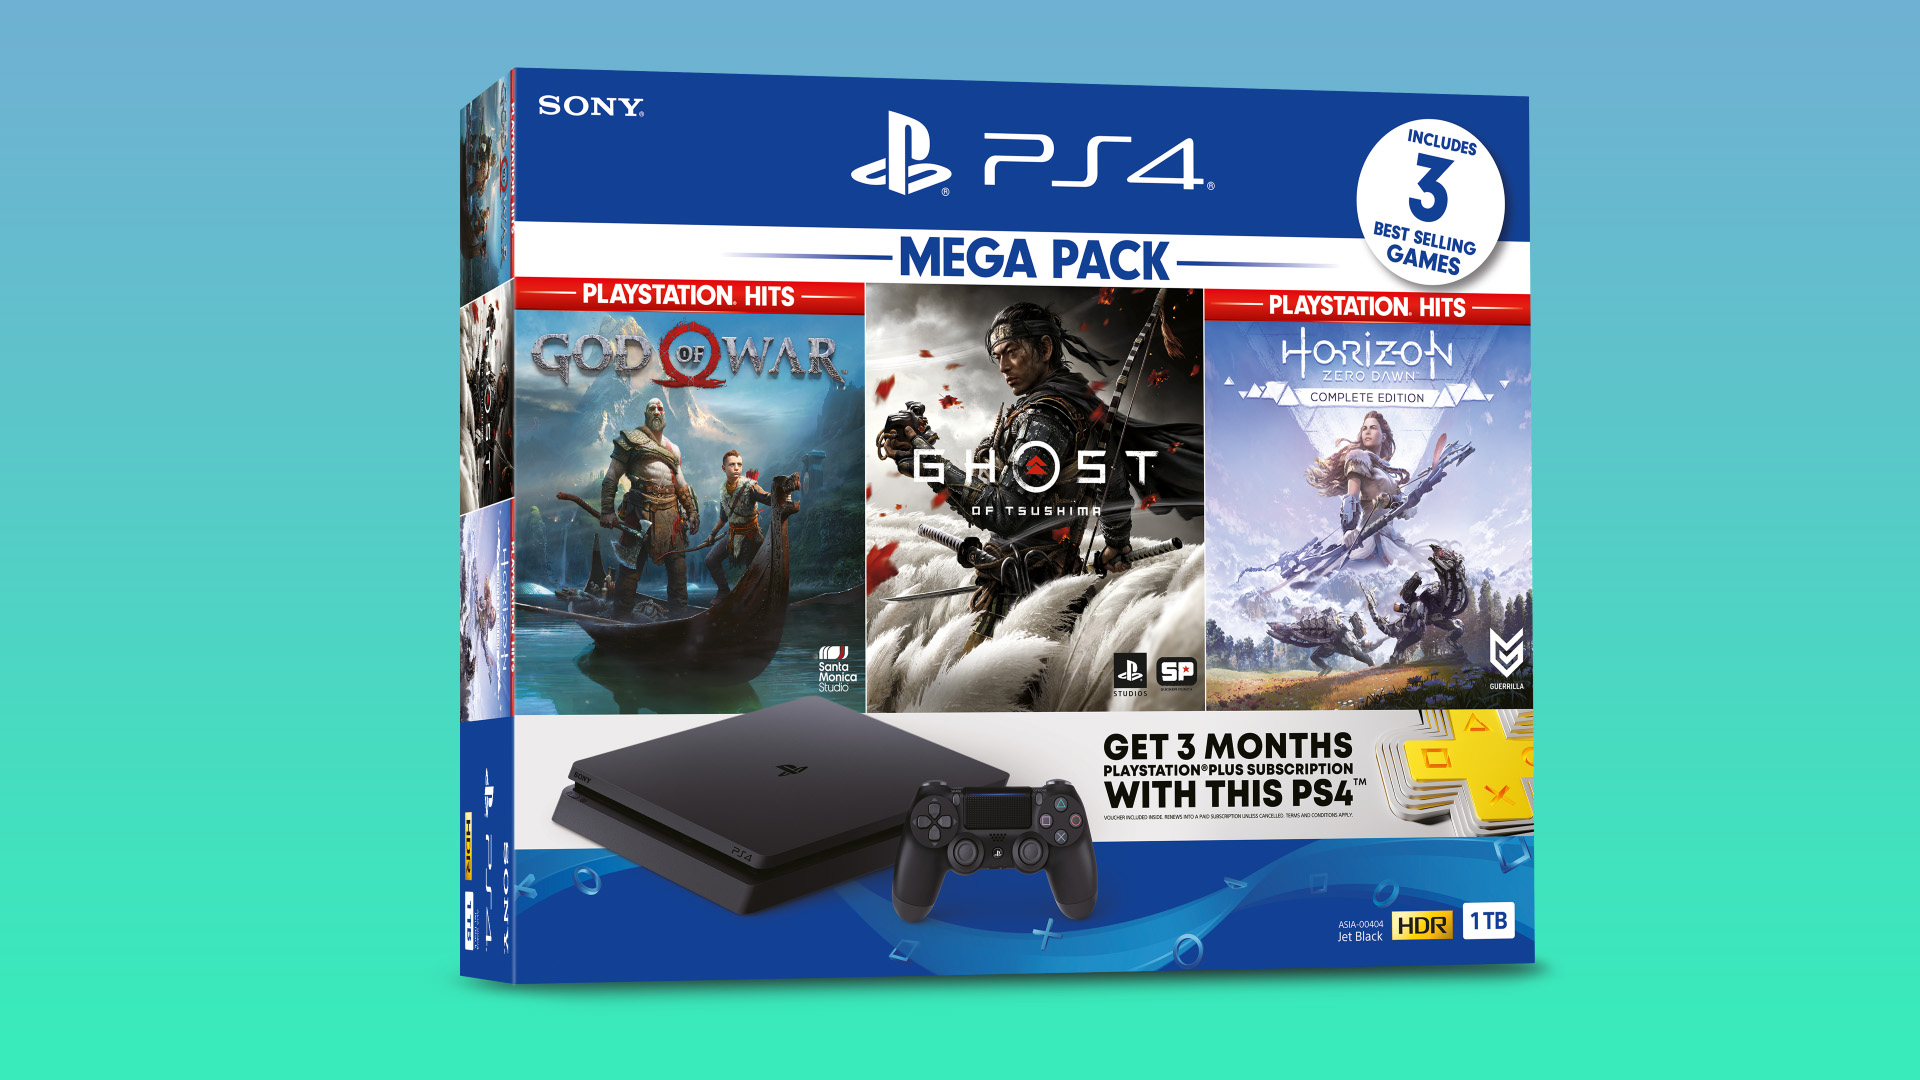 Sony ประกาศพร้อมวางจำหน่าย “PlayStation®4 MEGA PACK” พร้อมเกมที่มียอดขายสูงสุด 3 เกม 15 ก.ค. นี้